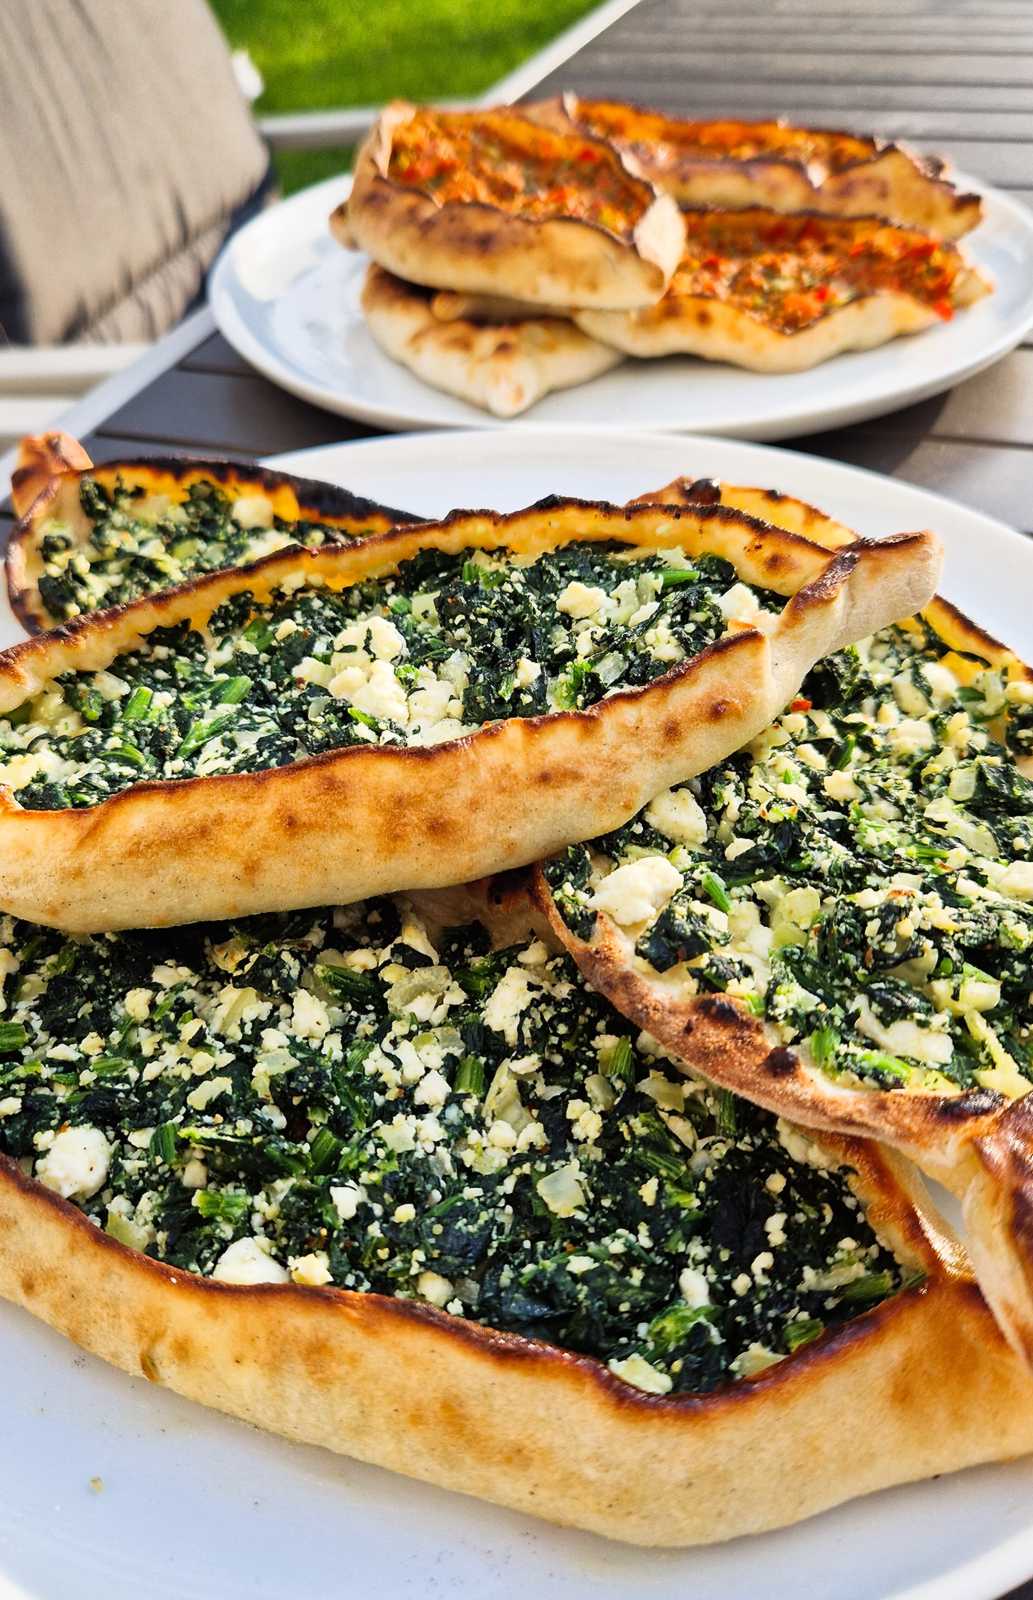 Türkische Pide mit Spinat aus dem Pizzaofen